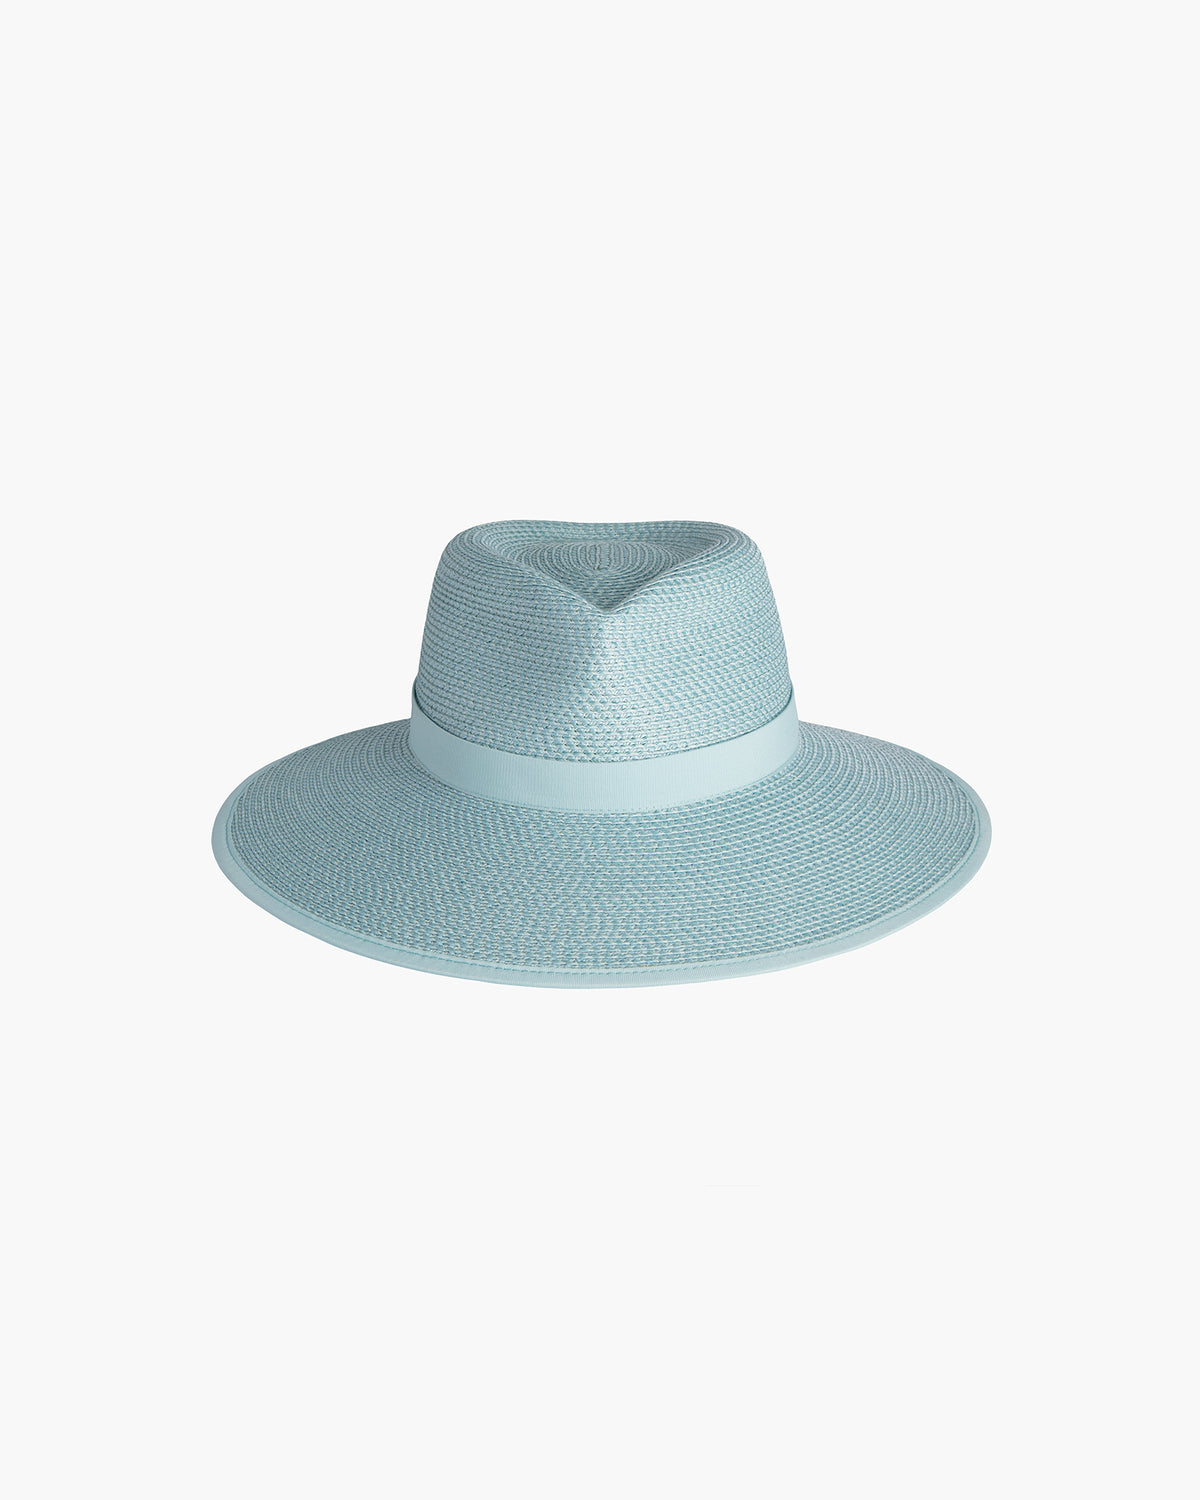 Suncrest Visor Hat | Women's Straw Visor | Eric Javits